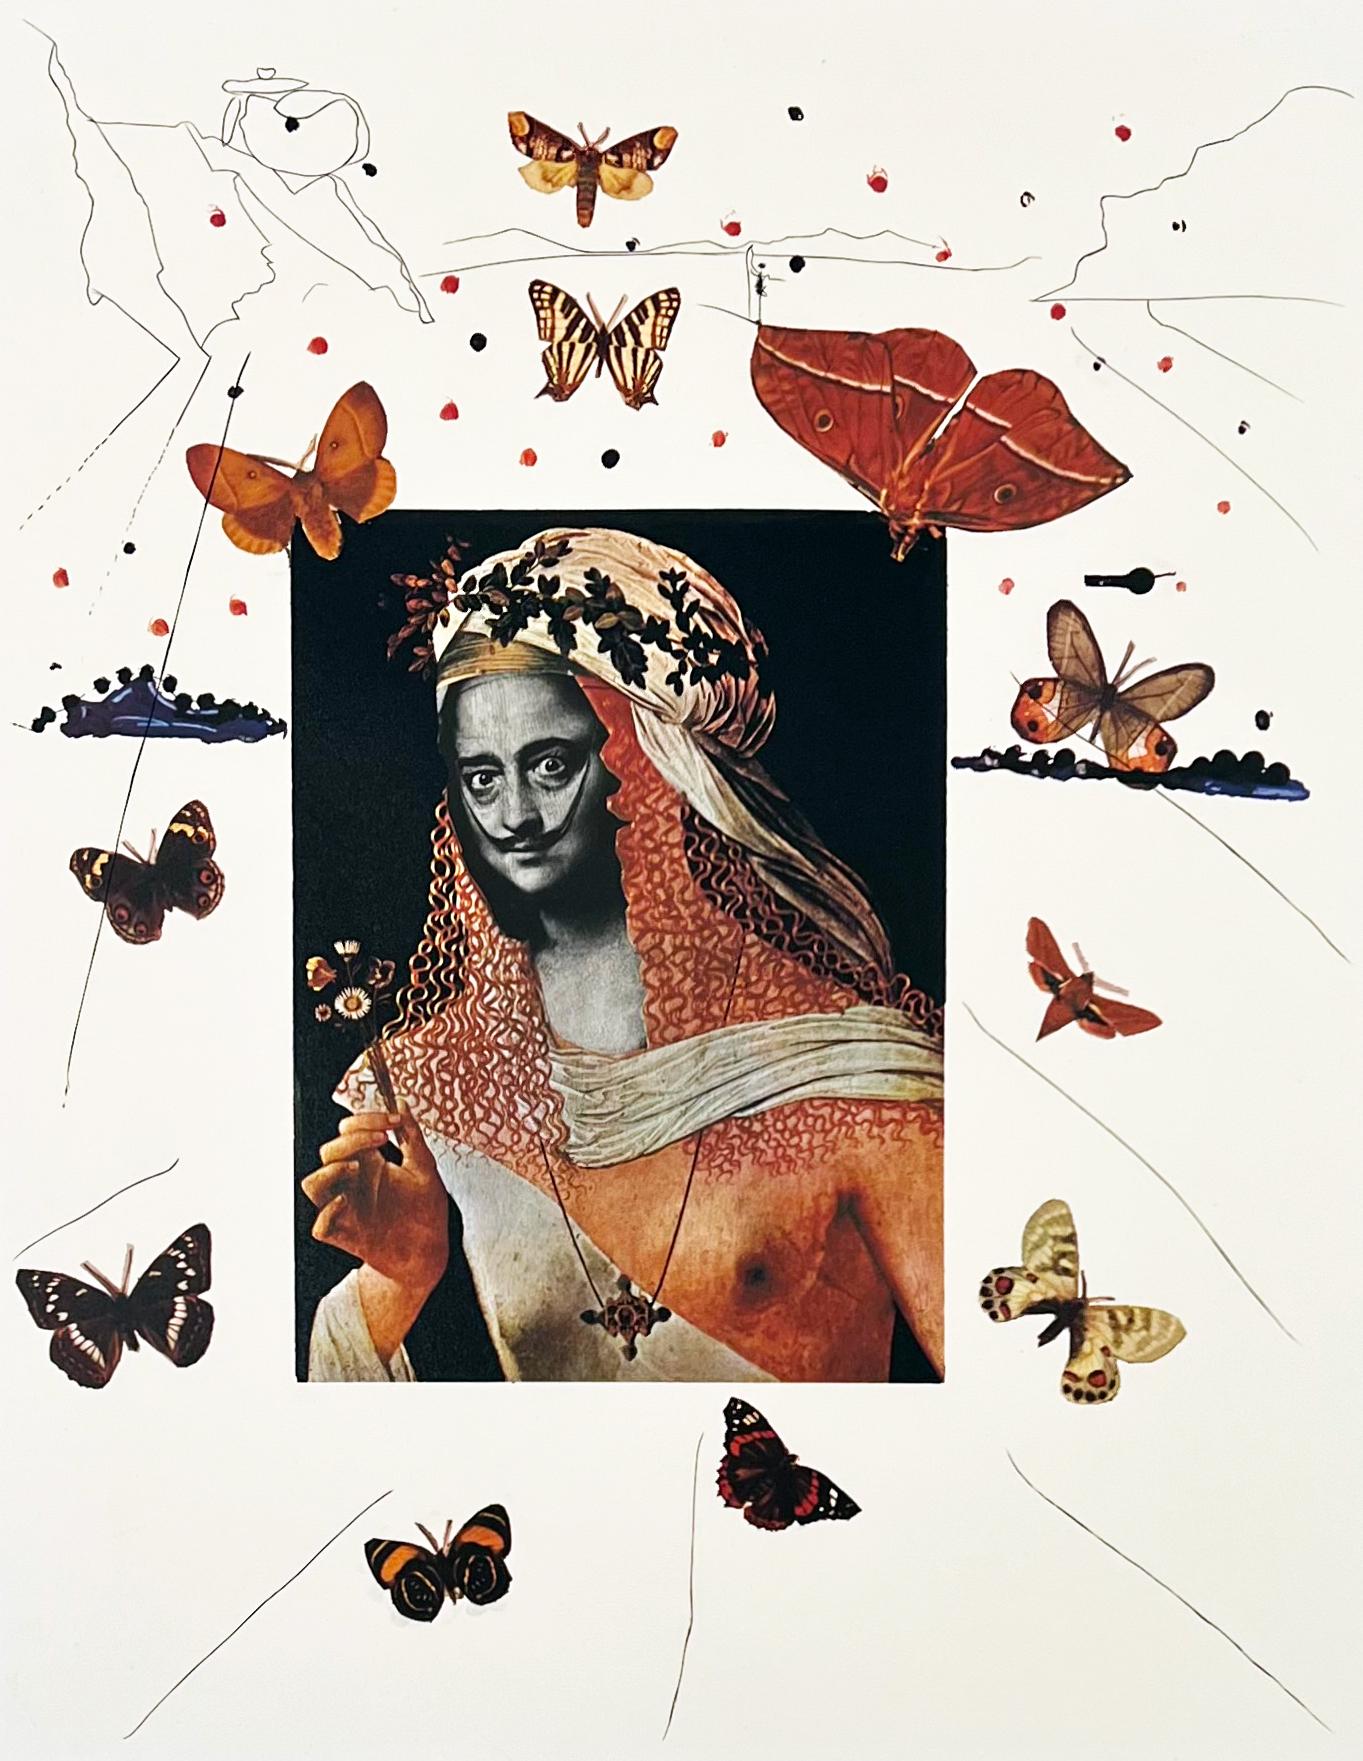 Surrealistisches Porträt von Dali umgeben von Schmetterlingen, Erinnerungen an Surrealismus